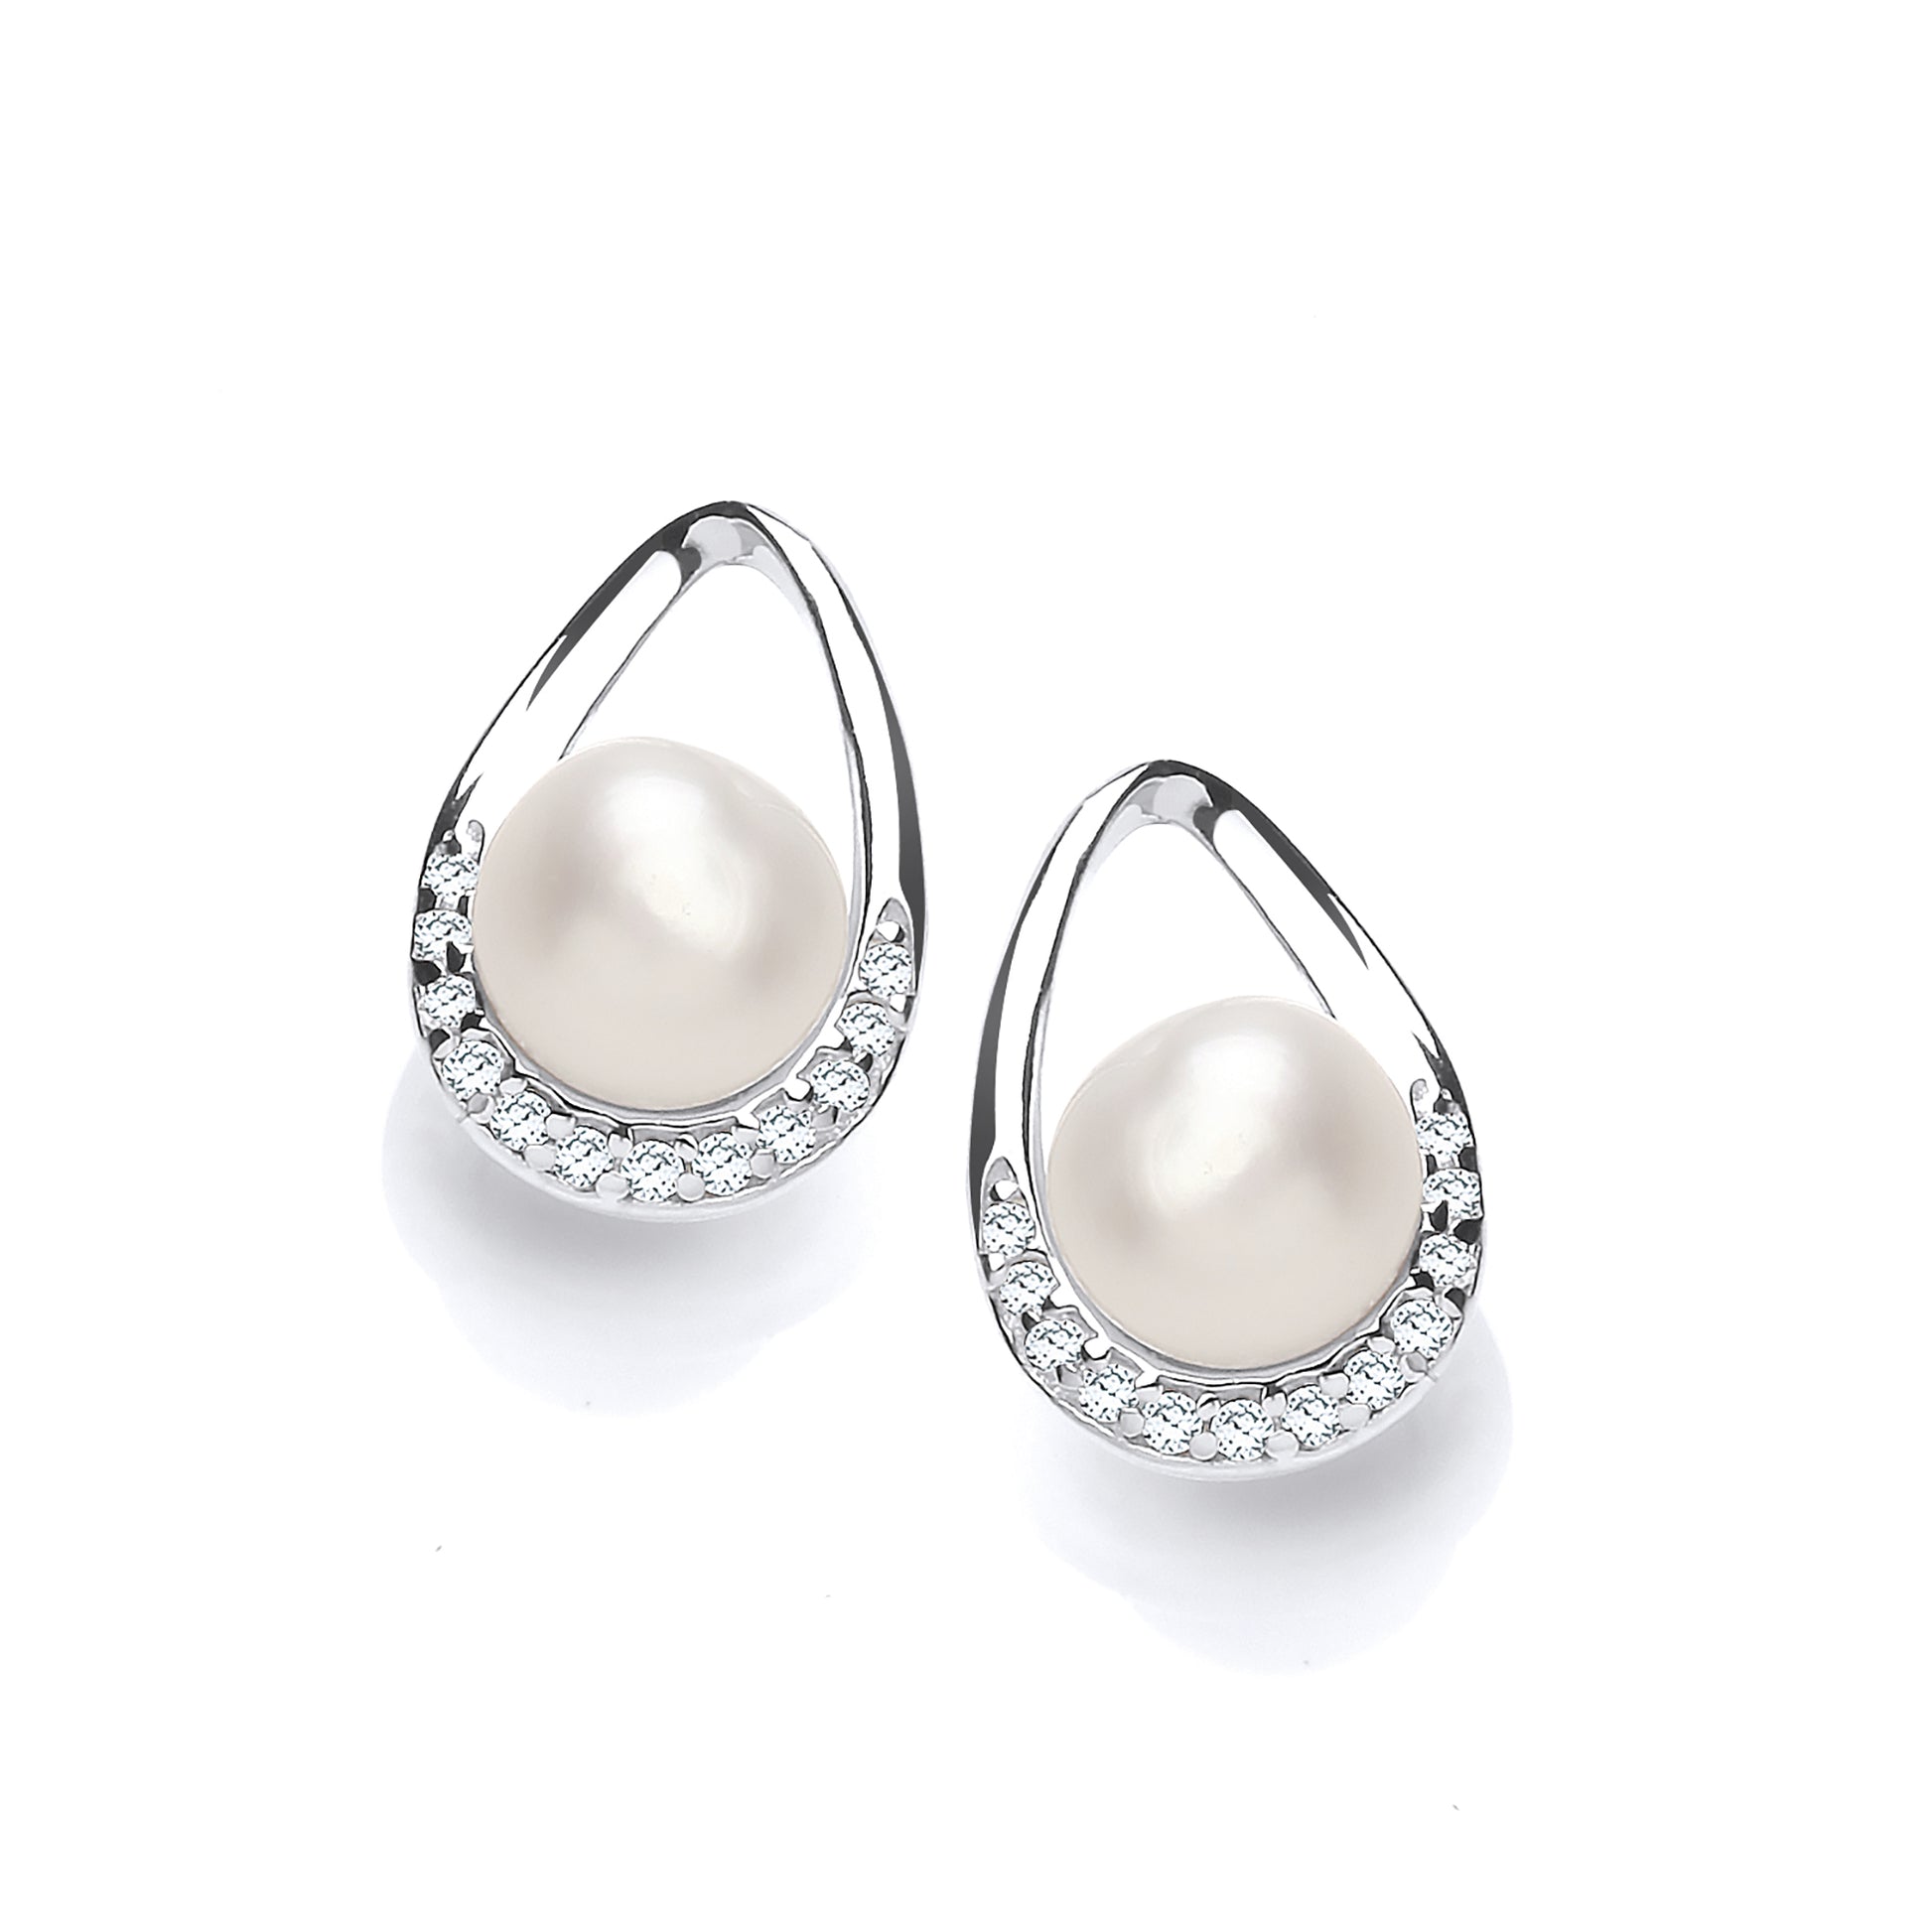 Silver  CZ Pearl Full Moon Pear Avocado Drop Earrings 6mm - GVE924